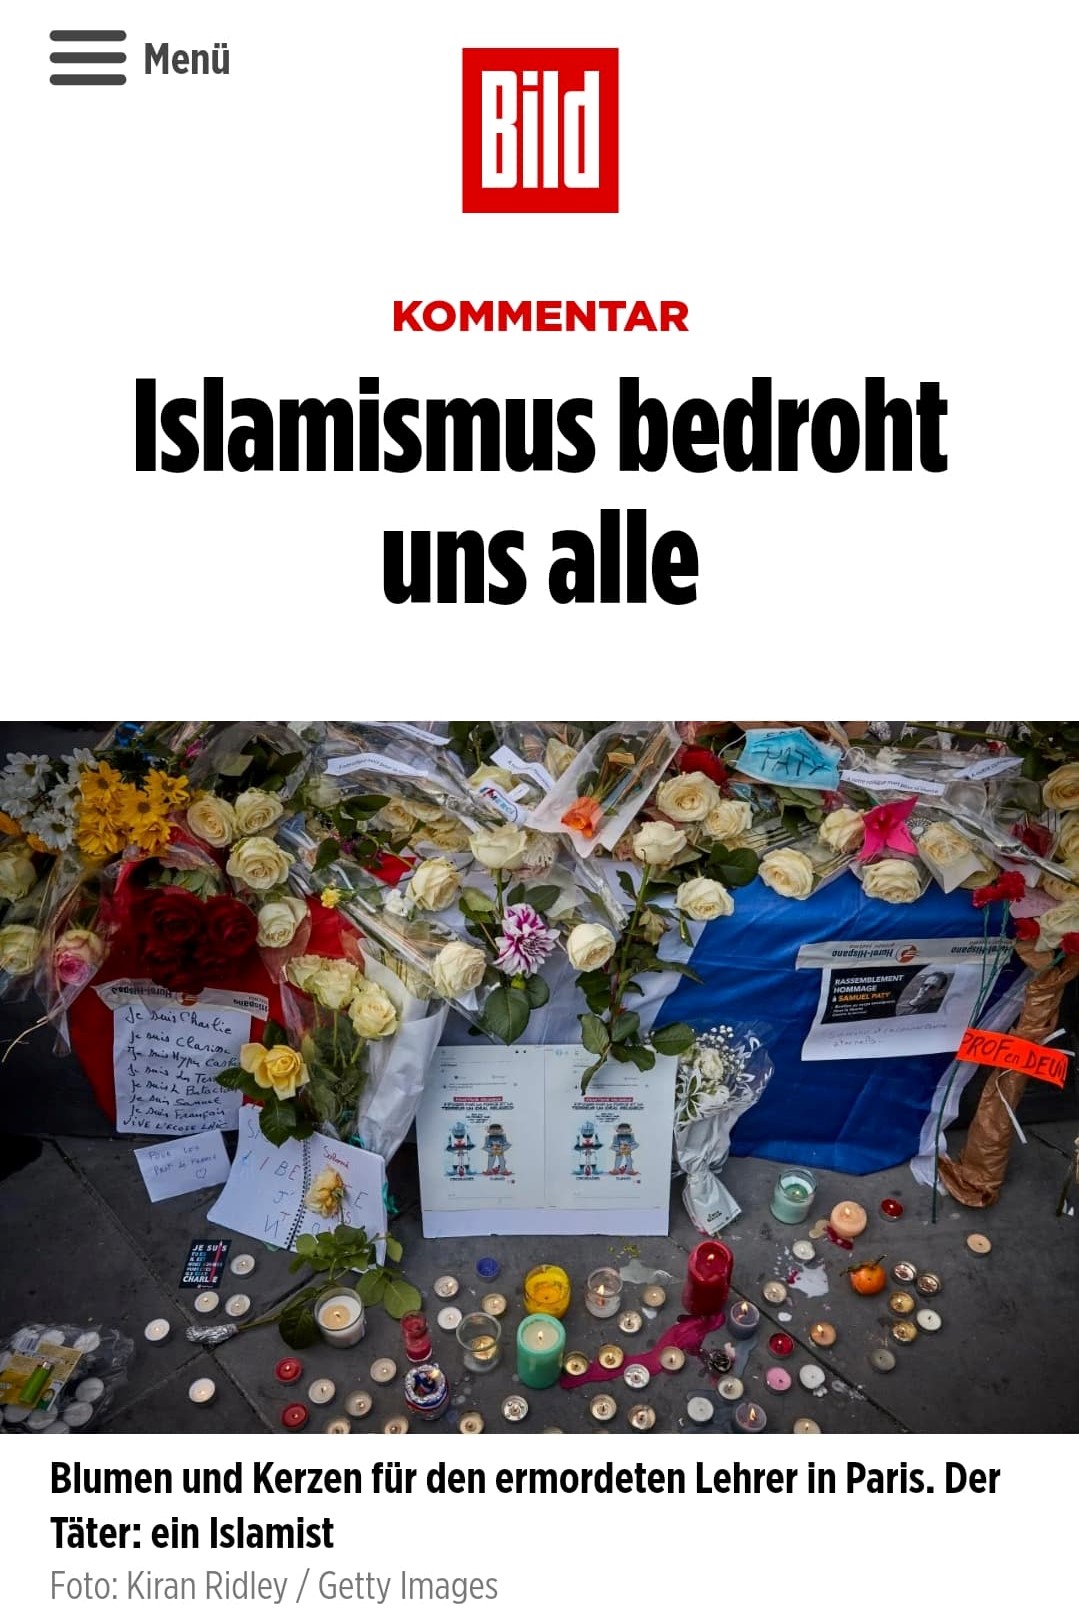 Bild: "Islamizm zagraża nam wszystkim" - Screen: www.bild.de